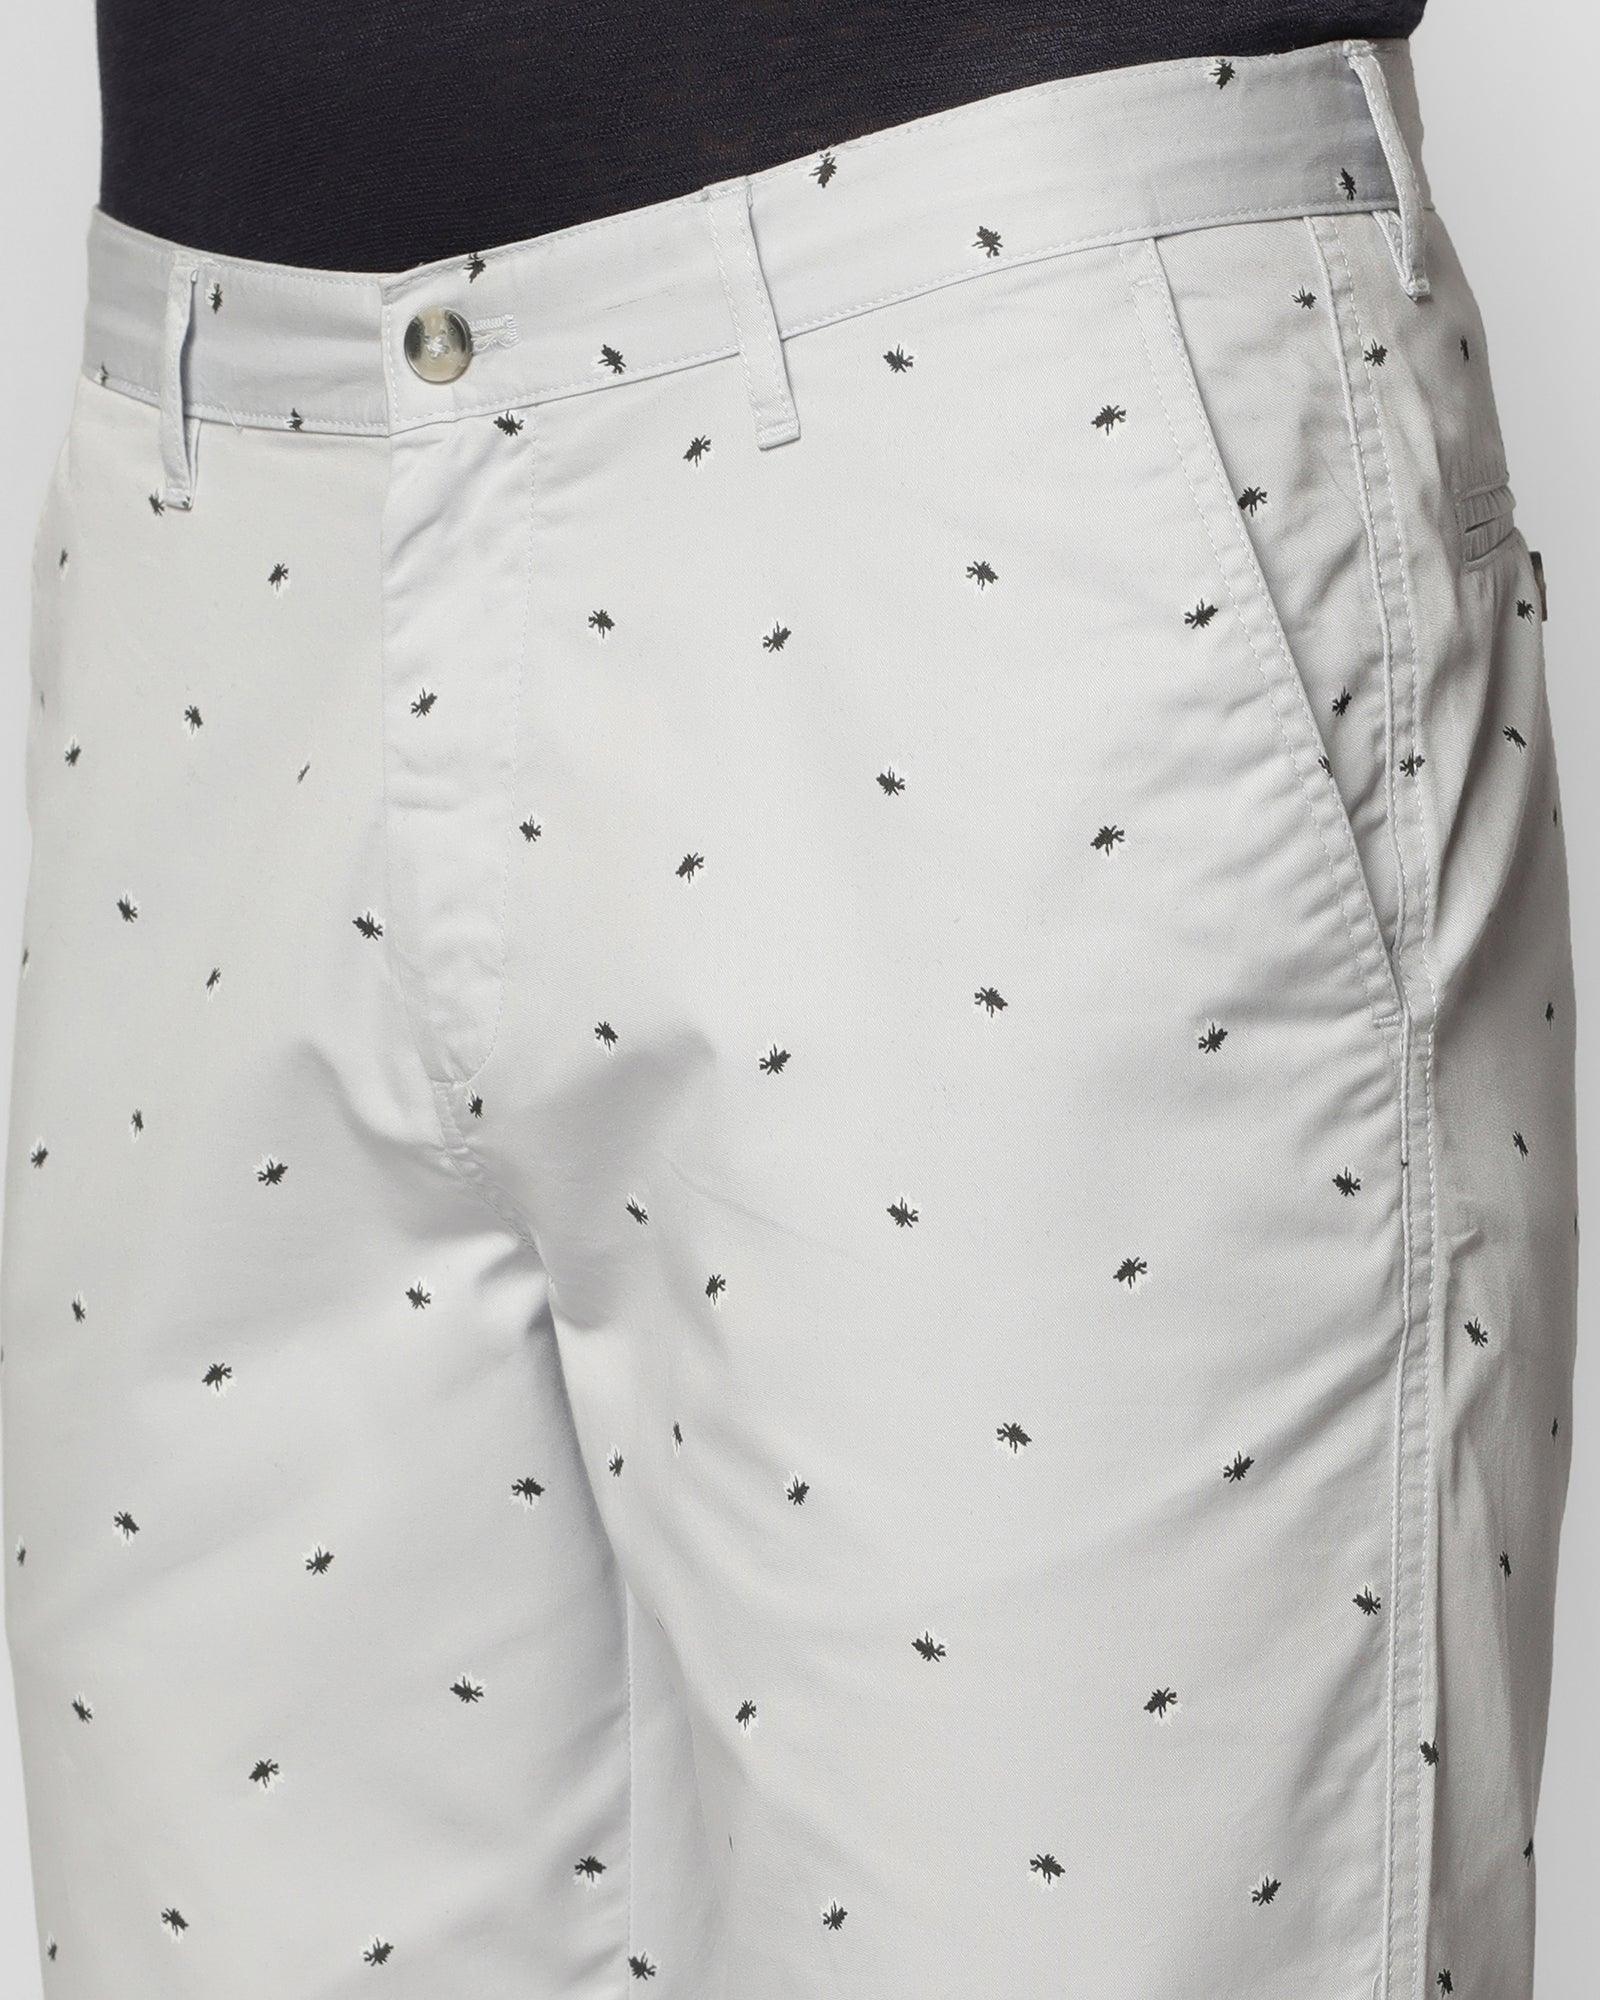 Casual Grey Printed Shorts - Jim